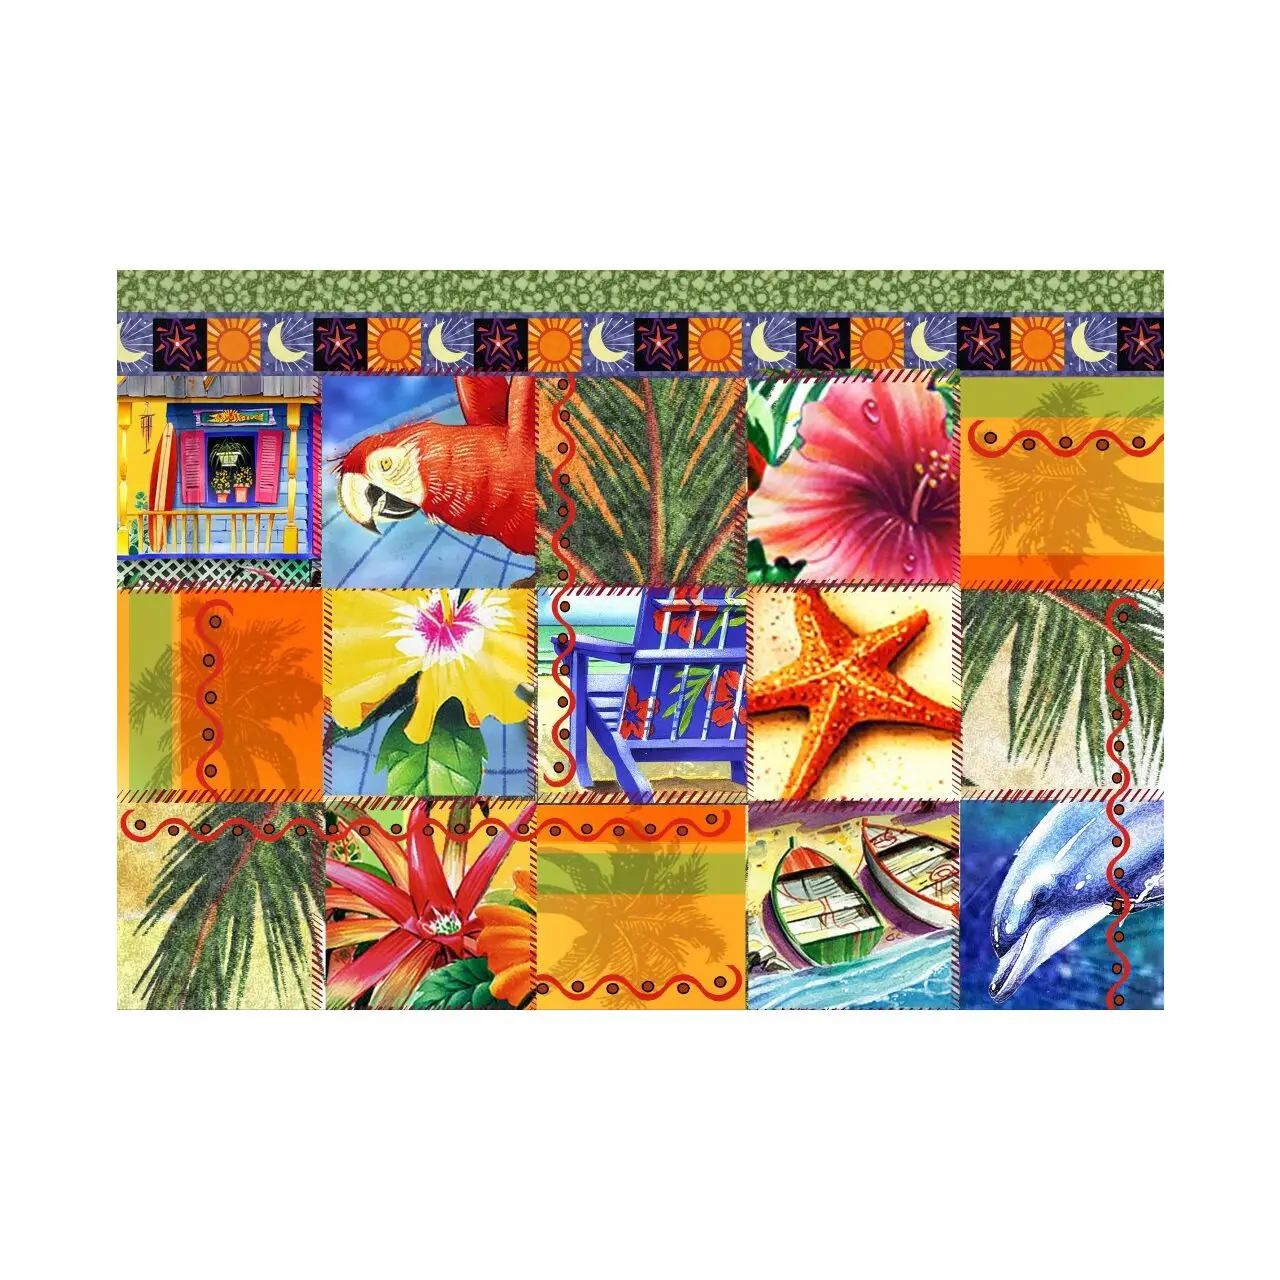 Neue Artikel sind eingetroffen 1 Puzzle Tropisches Quiltmosaik